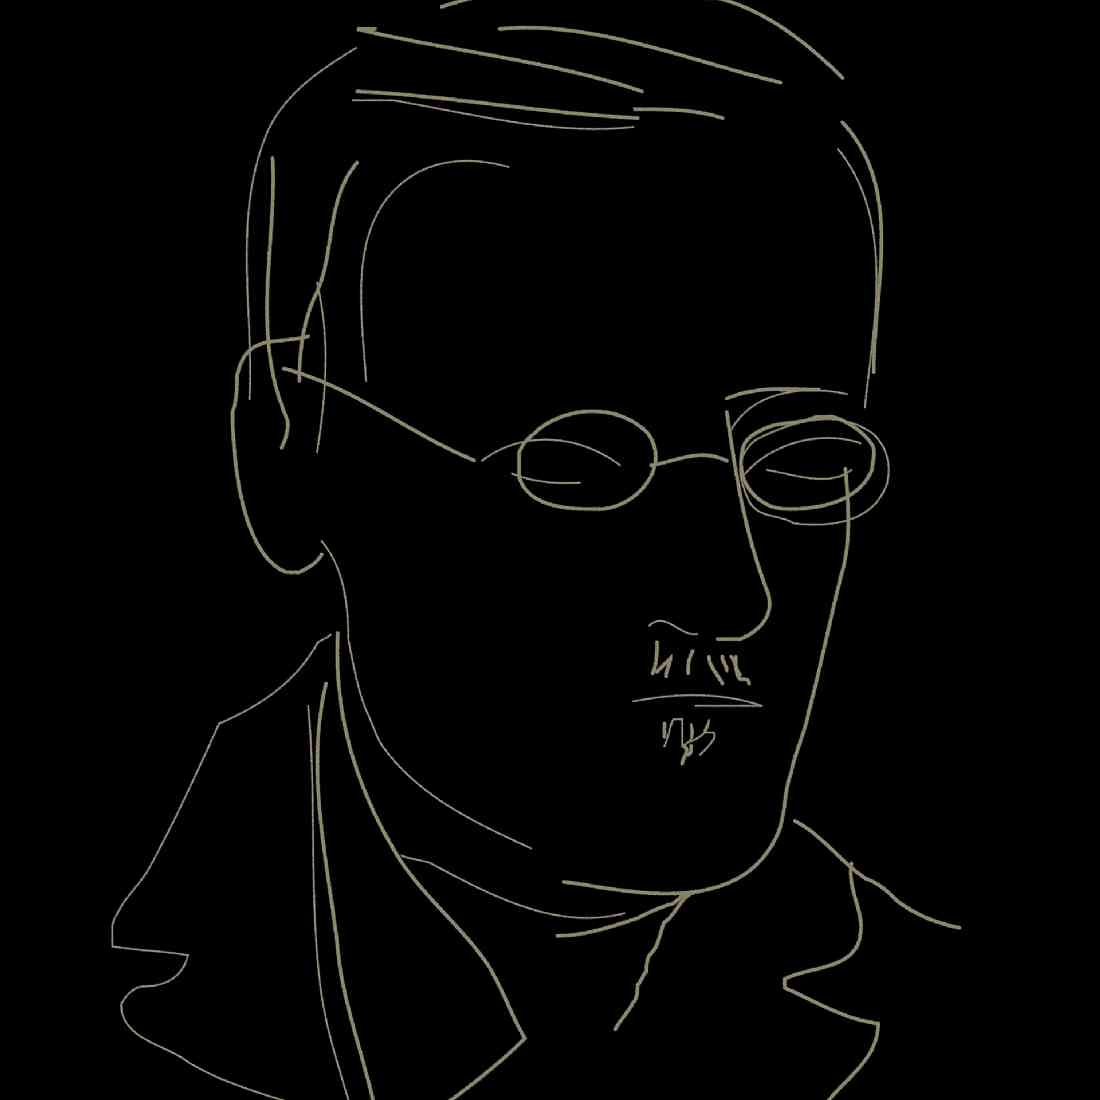 Paul Wearing: James Joyce